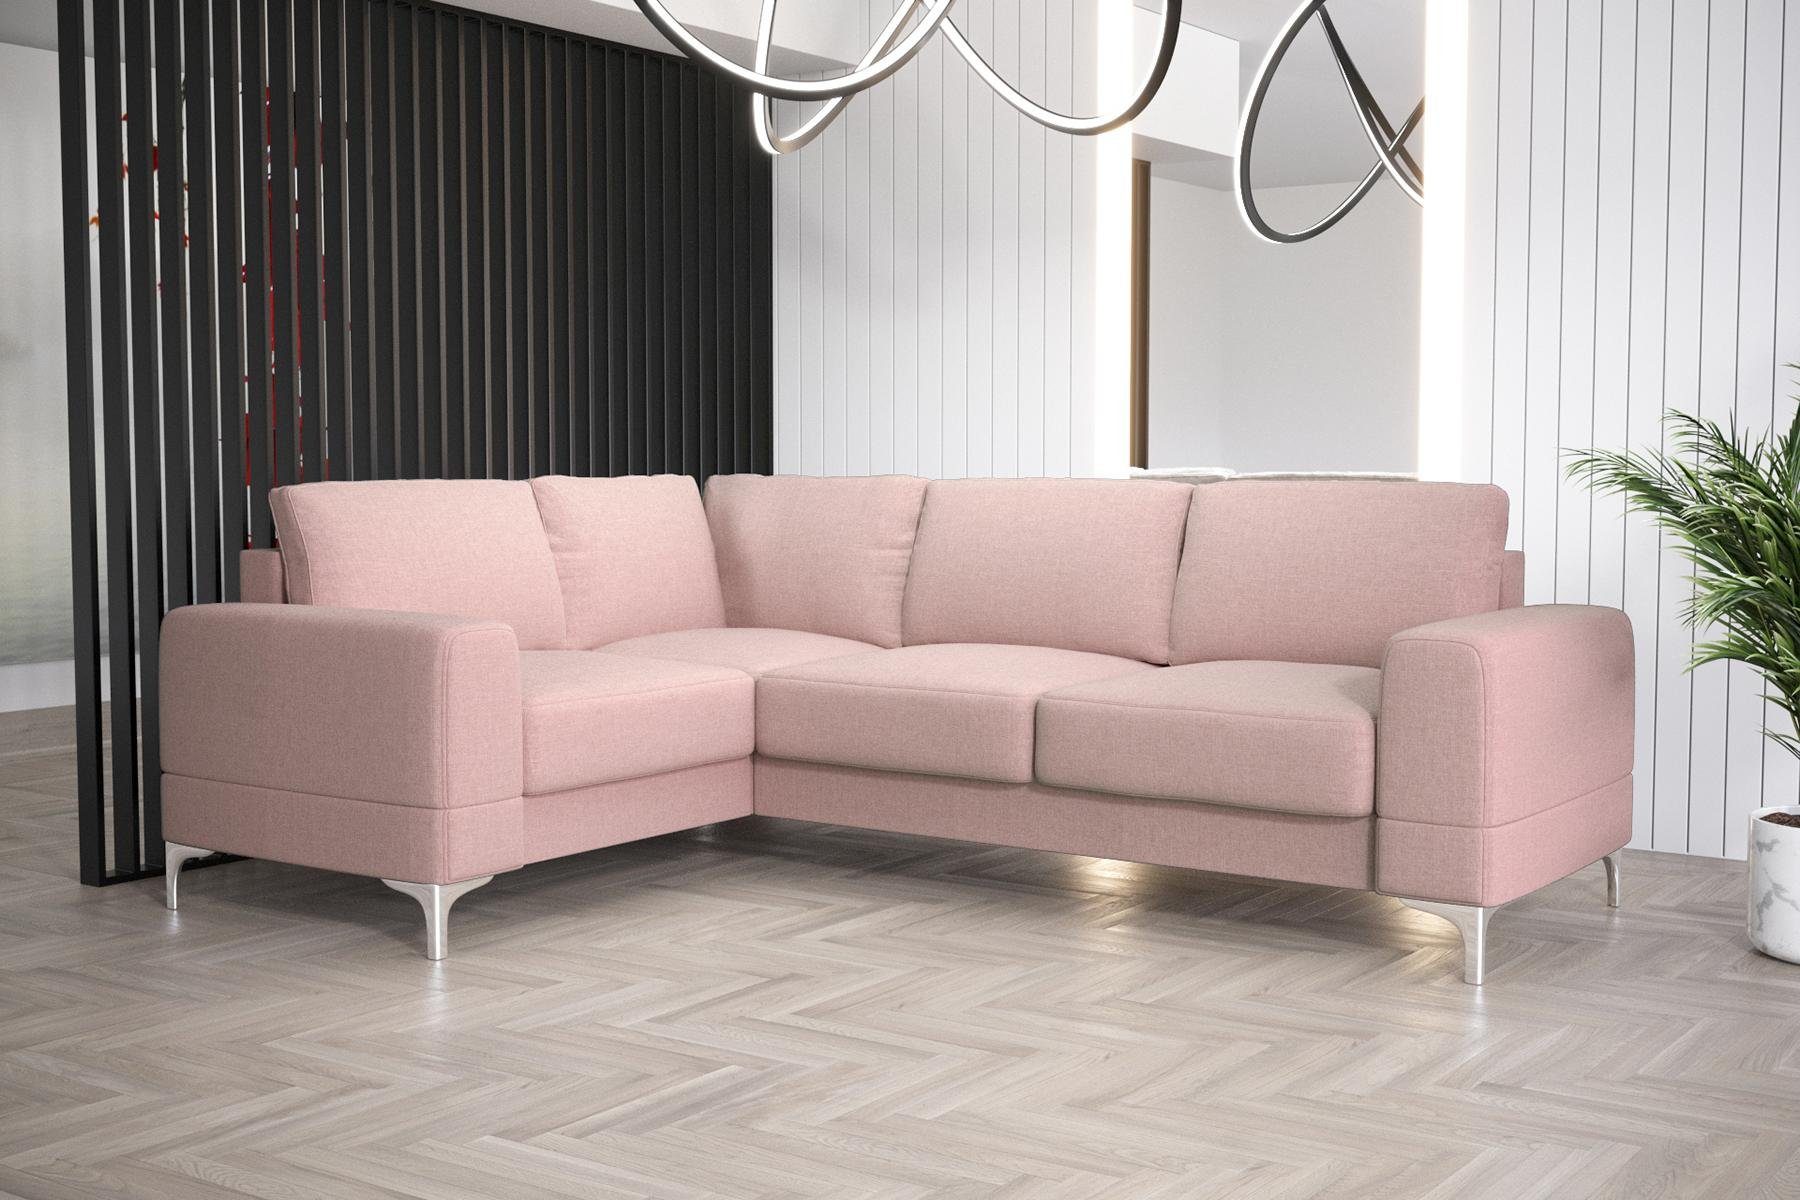 JVmoebel Ecksofa Wohnzimmer Sofa L-Form Rosa Modern Ecksofa Made in Europe Luxus Couch, Möbel